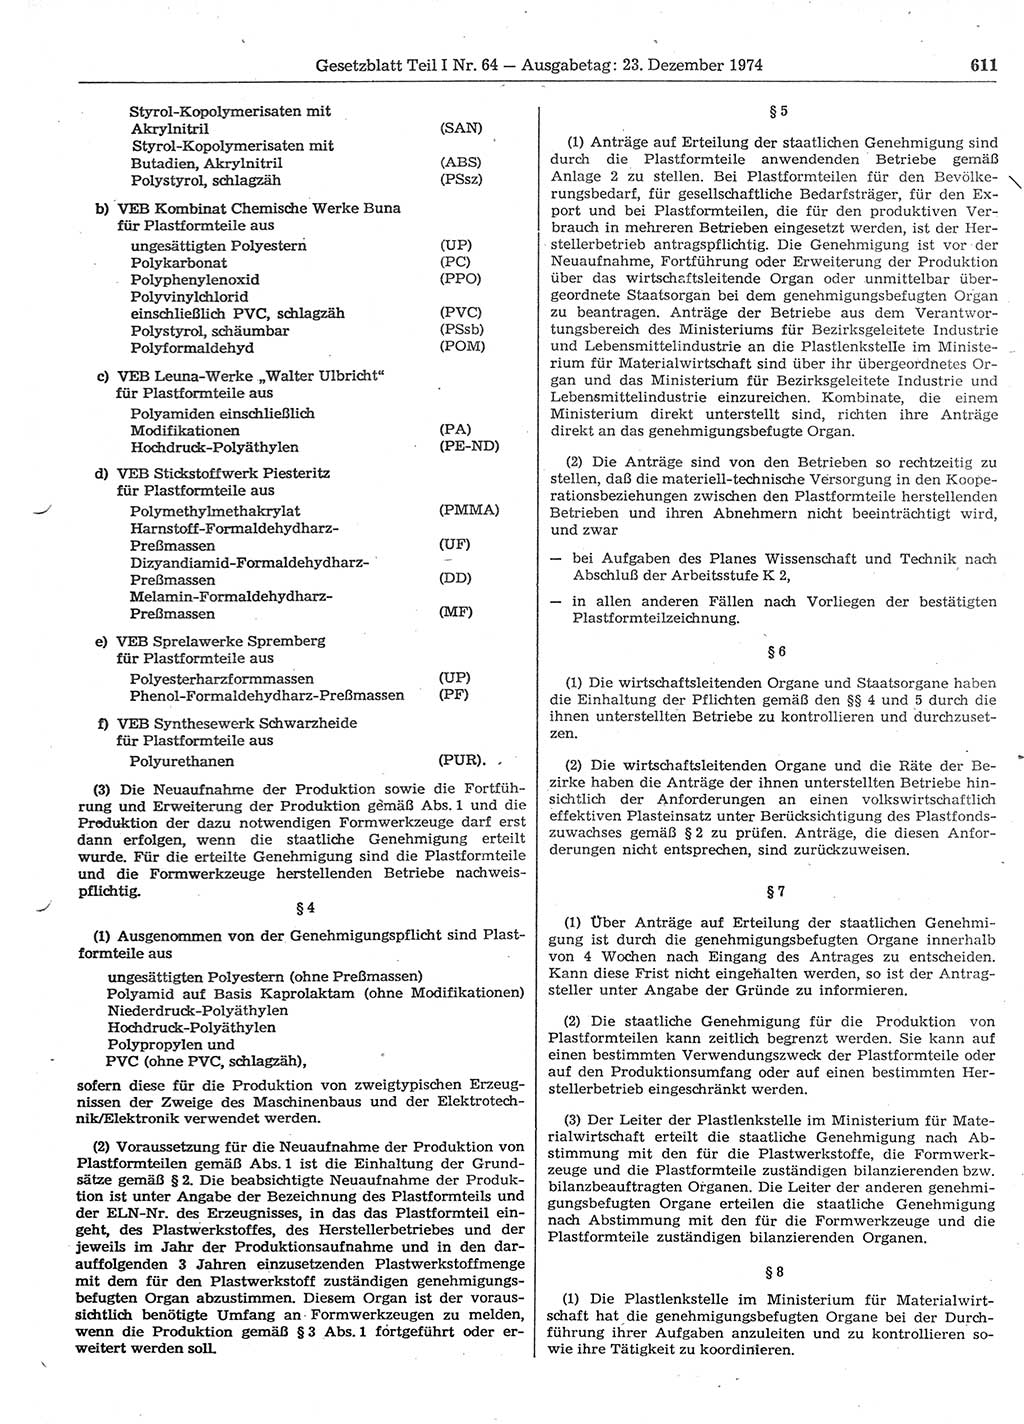 Gesetzblatt (GBl.) der Deutschen Demokratischen Republik (DDR) Teil Ⅰ 1974, Seite 611 (GBl. DDR Ⅰ 1974, S. 611)